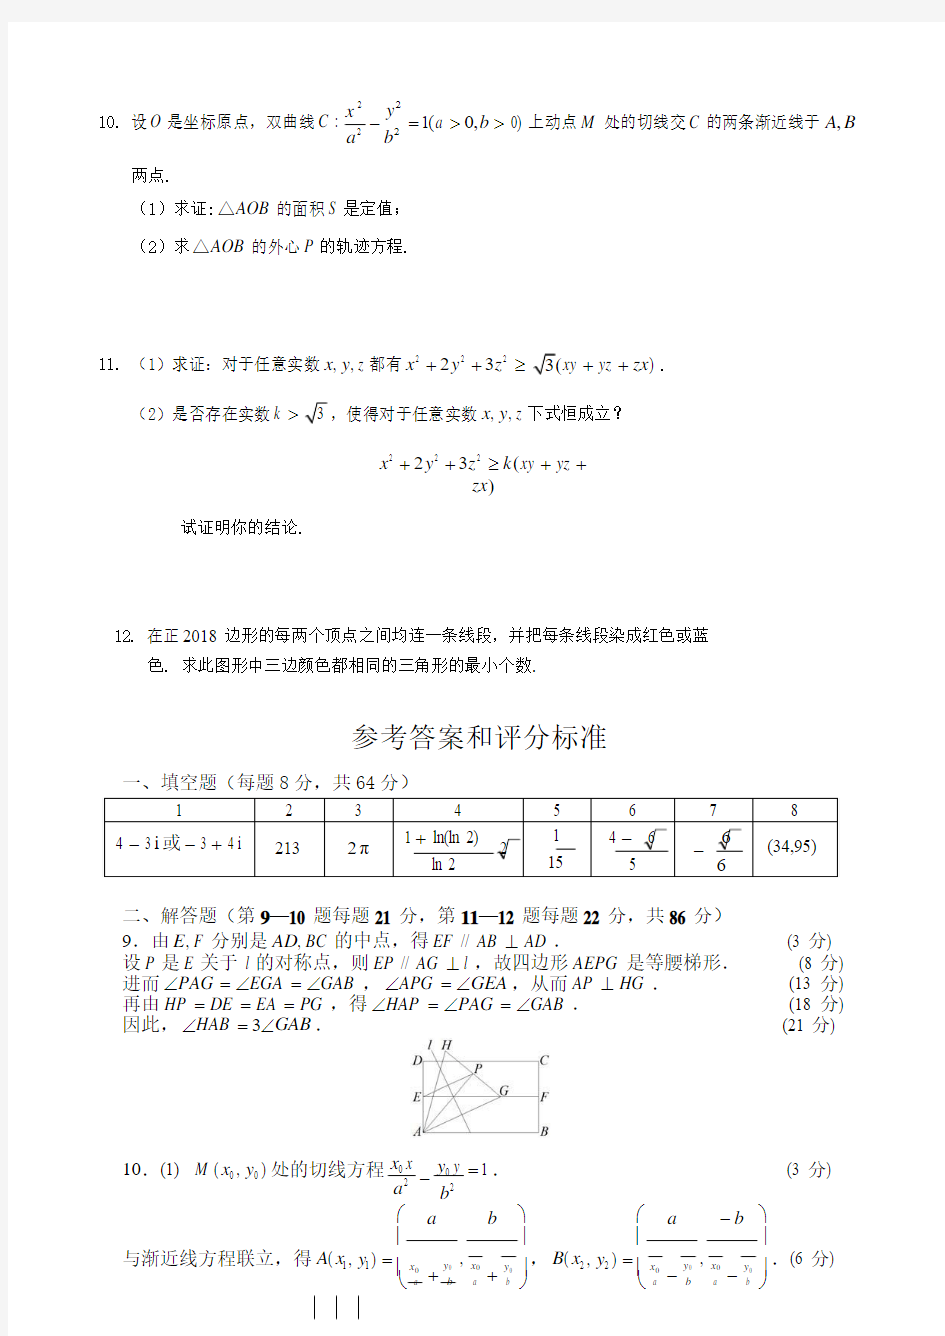 【数学竞赛】2018年全国高中数学联赛安徽省初赛试卷(附答案)